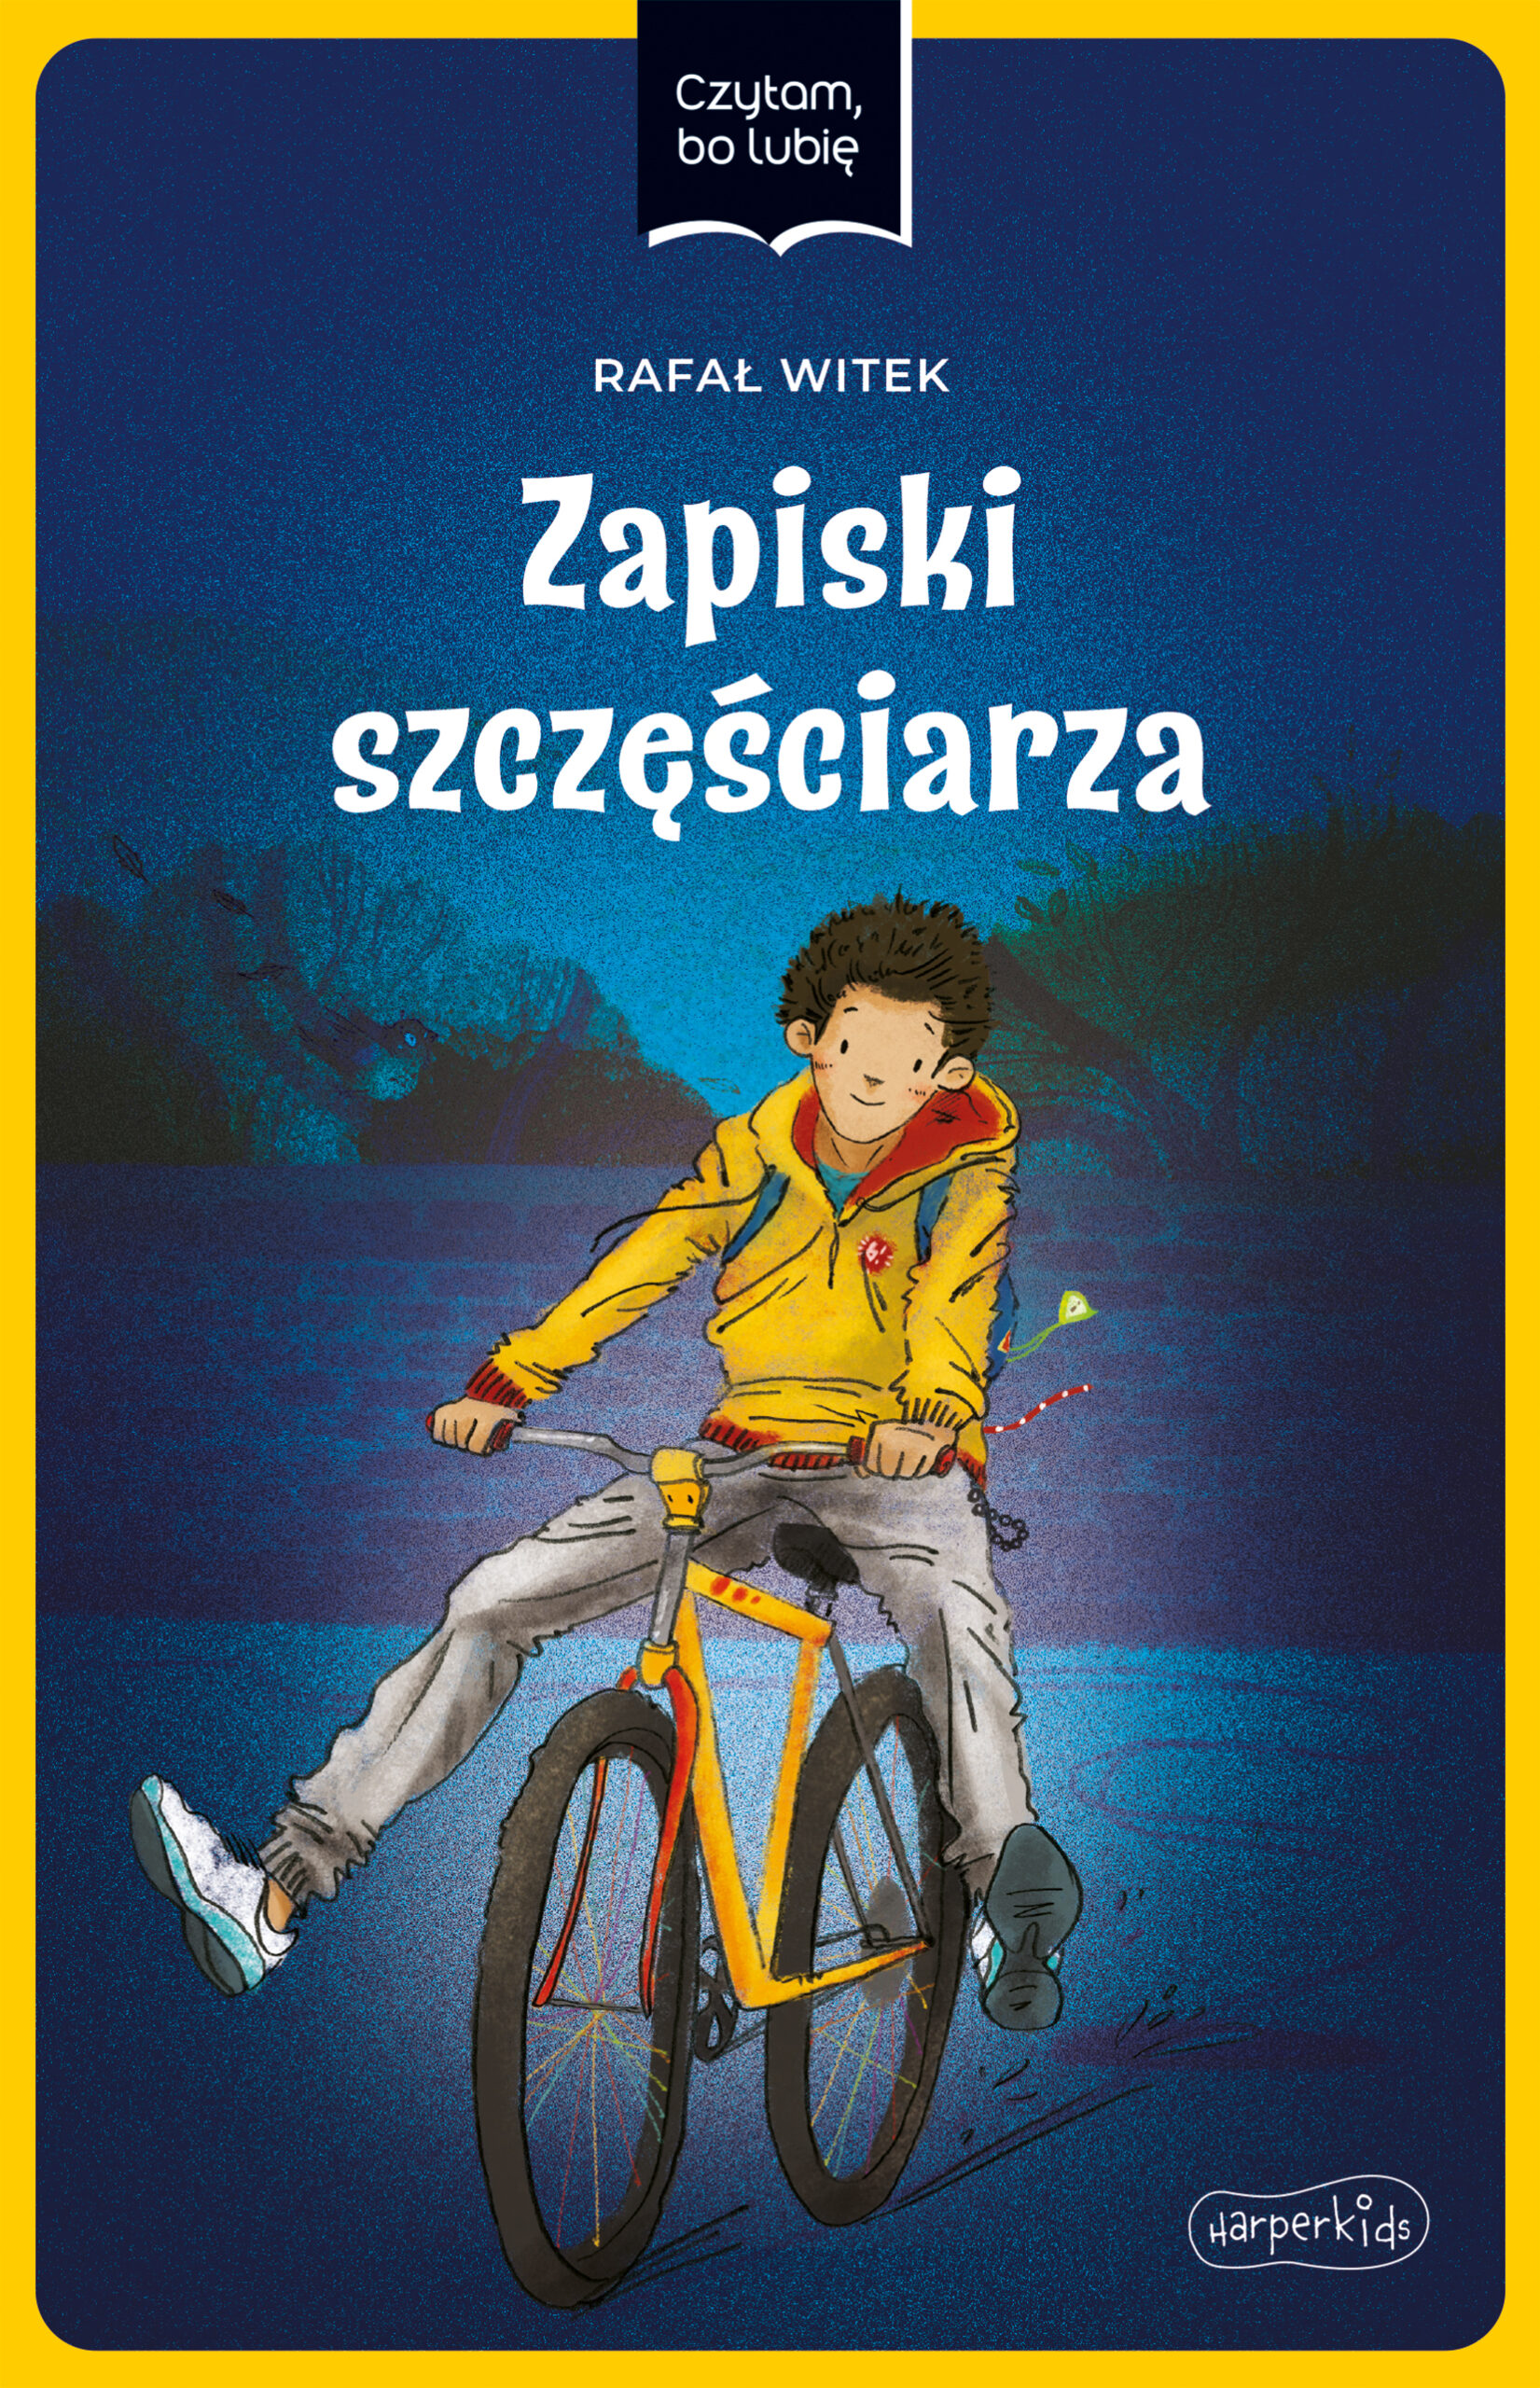 Okładka rysunkowa. Chłopiec w żółtej bluzie na żółtym rowerze o zmroku. W tle mur, widoczne zarysy drzew